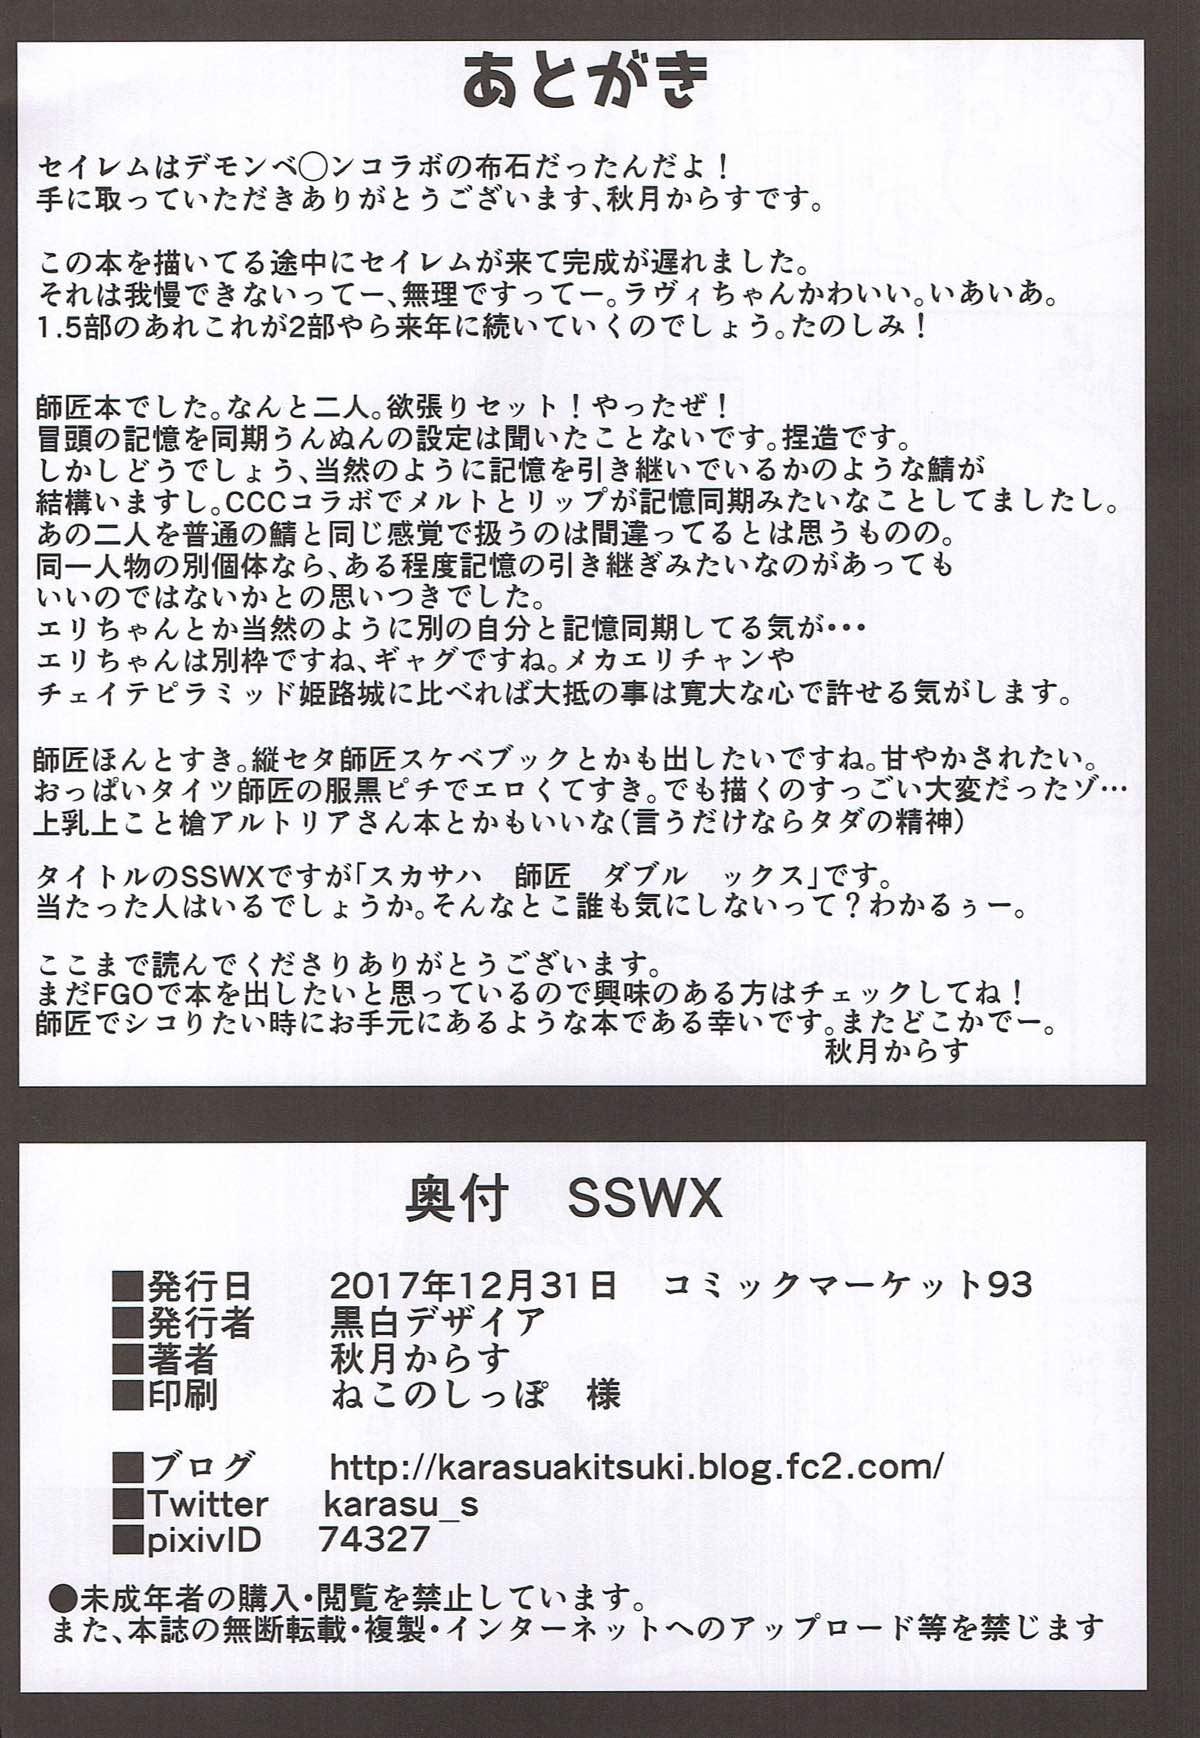 SSWX 24